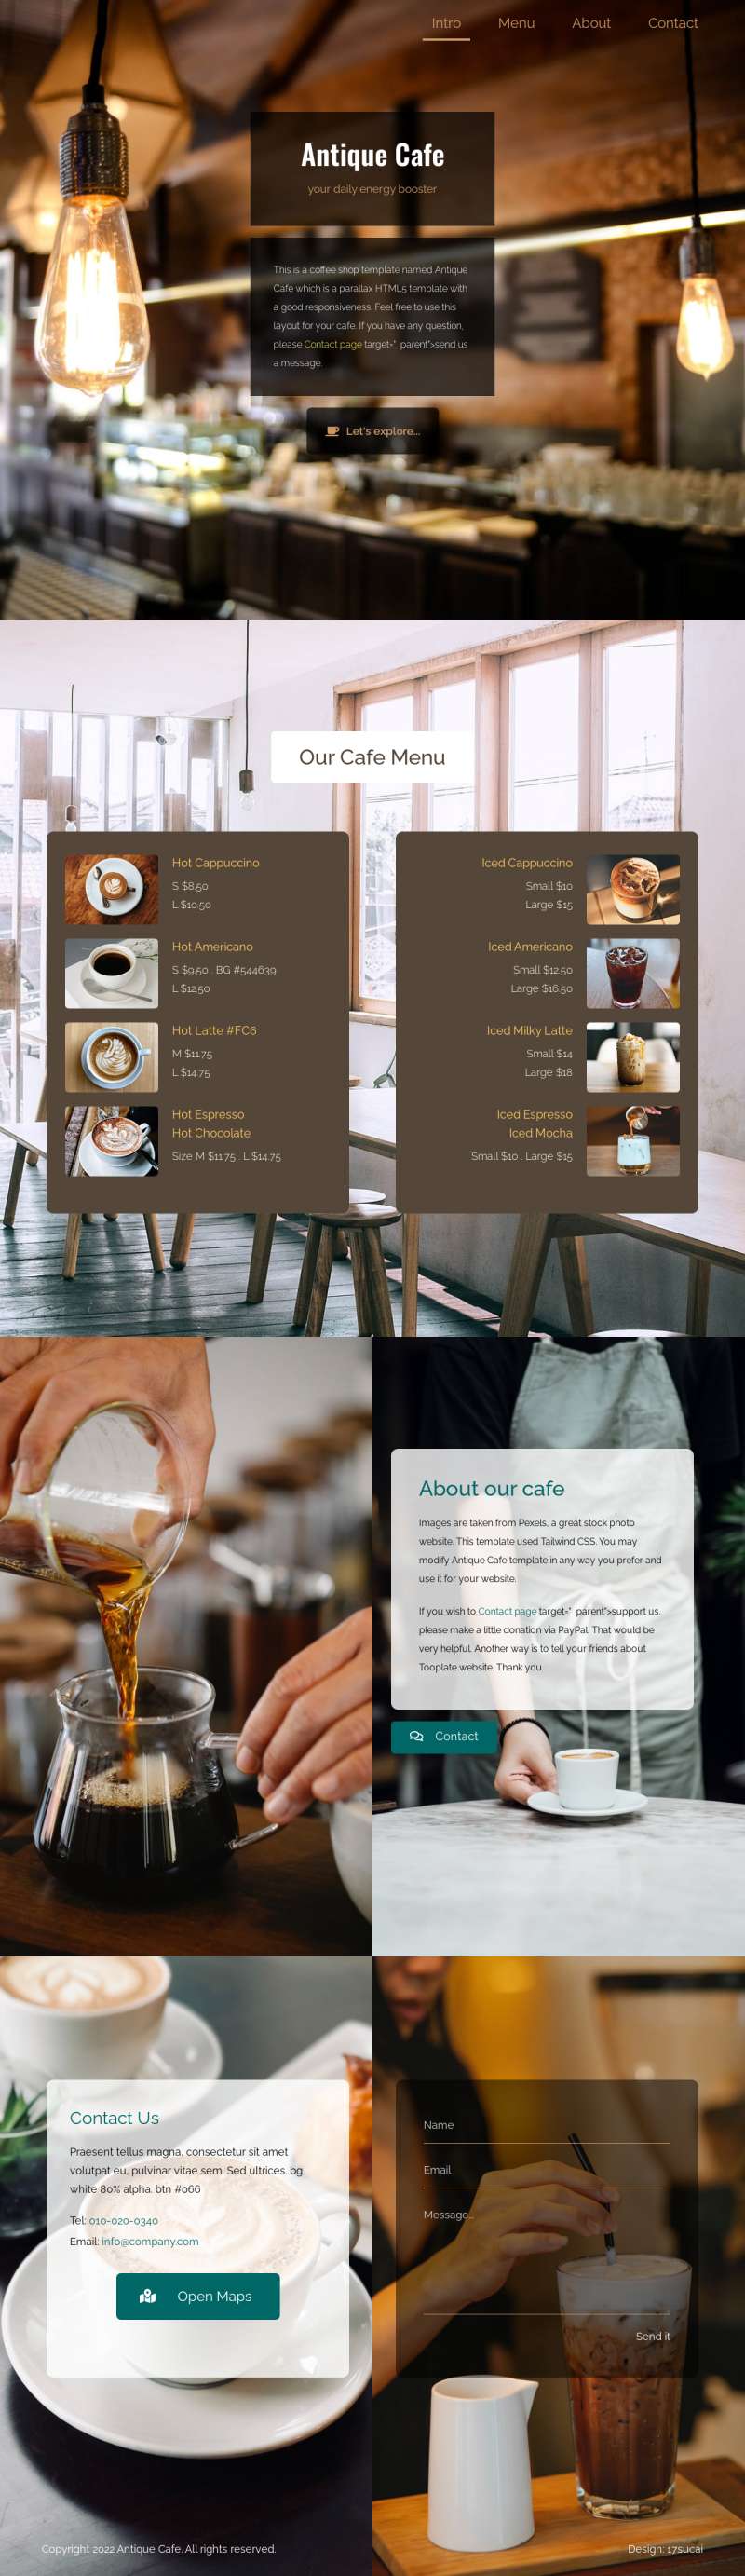 咖啡馆网页设计模板，html咖啡店制作代码